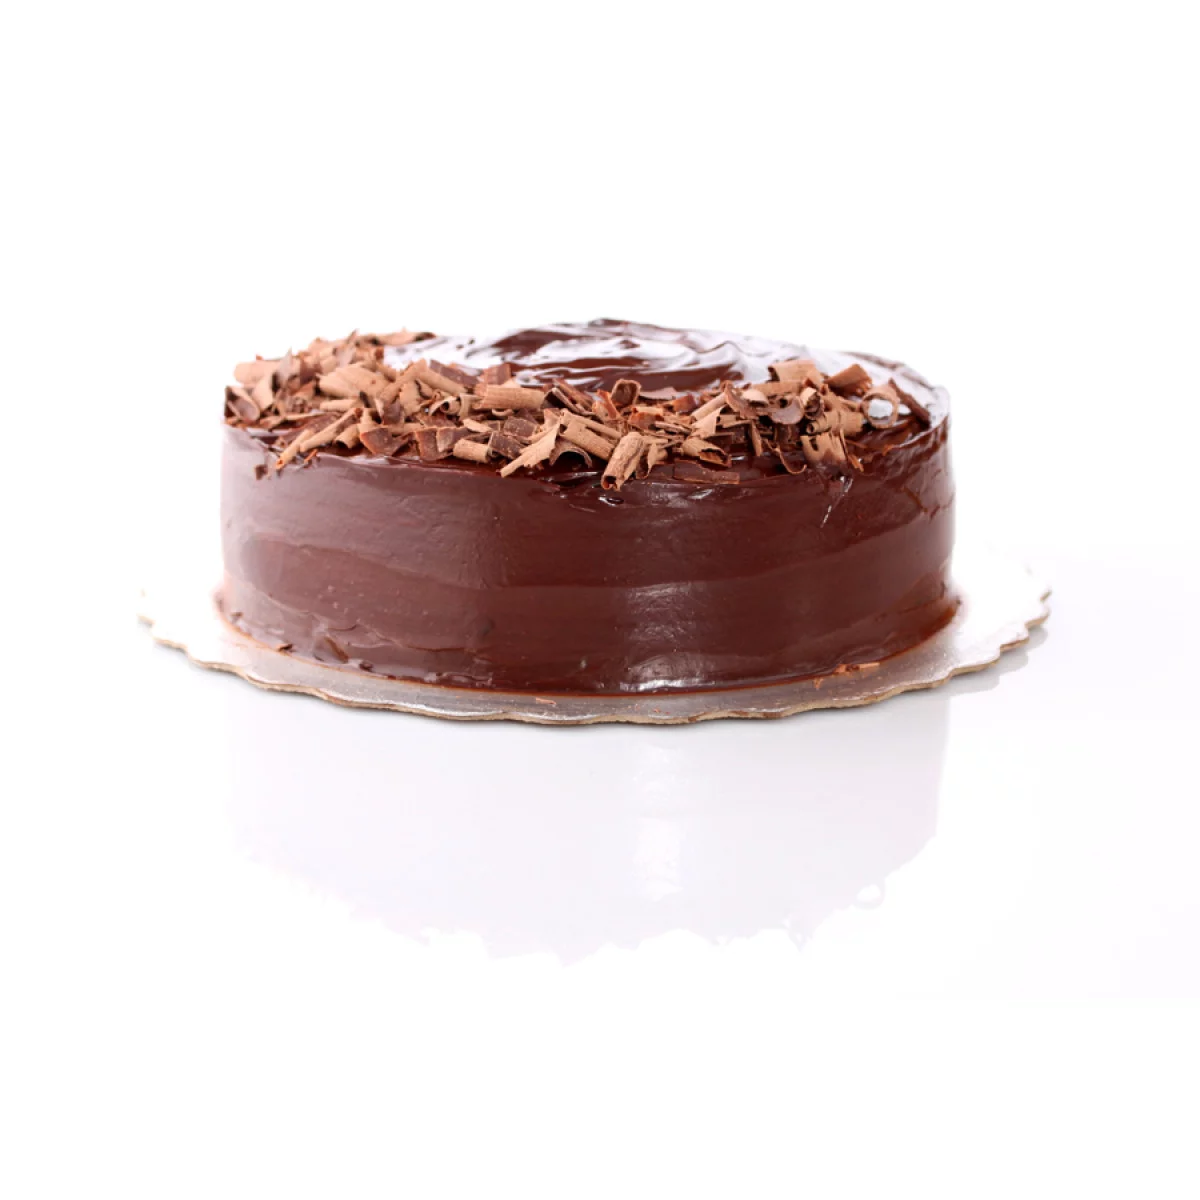 Torta de chocolate elaborada por Jorge Palacios